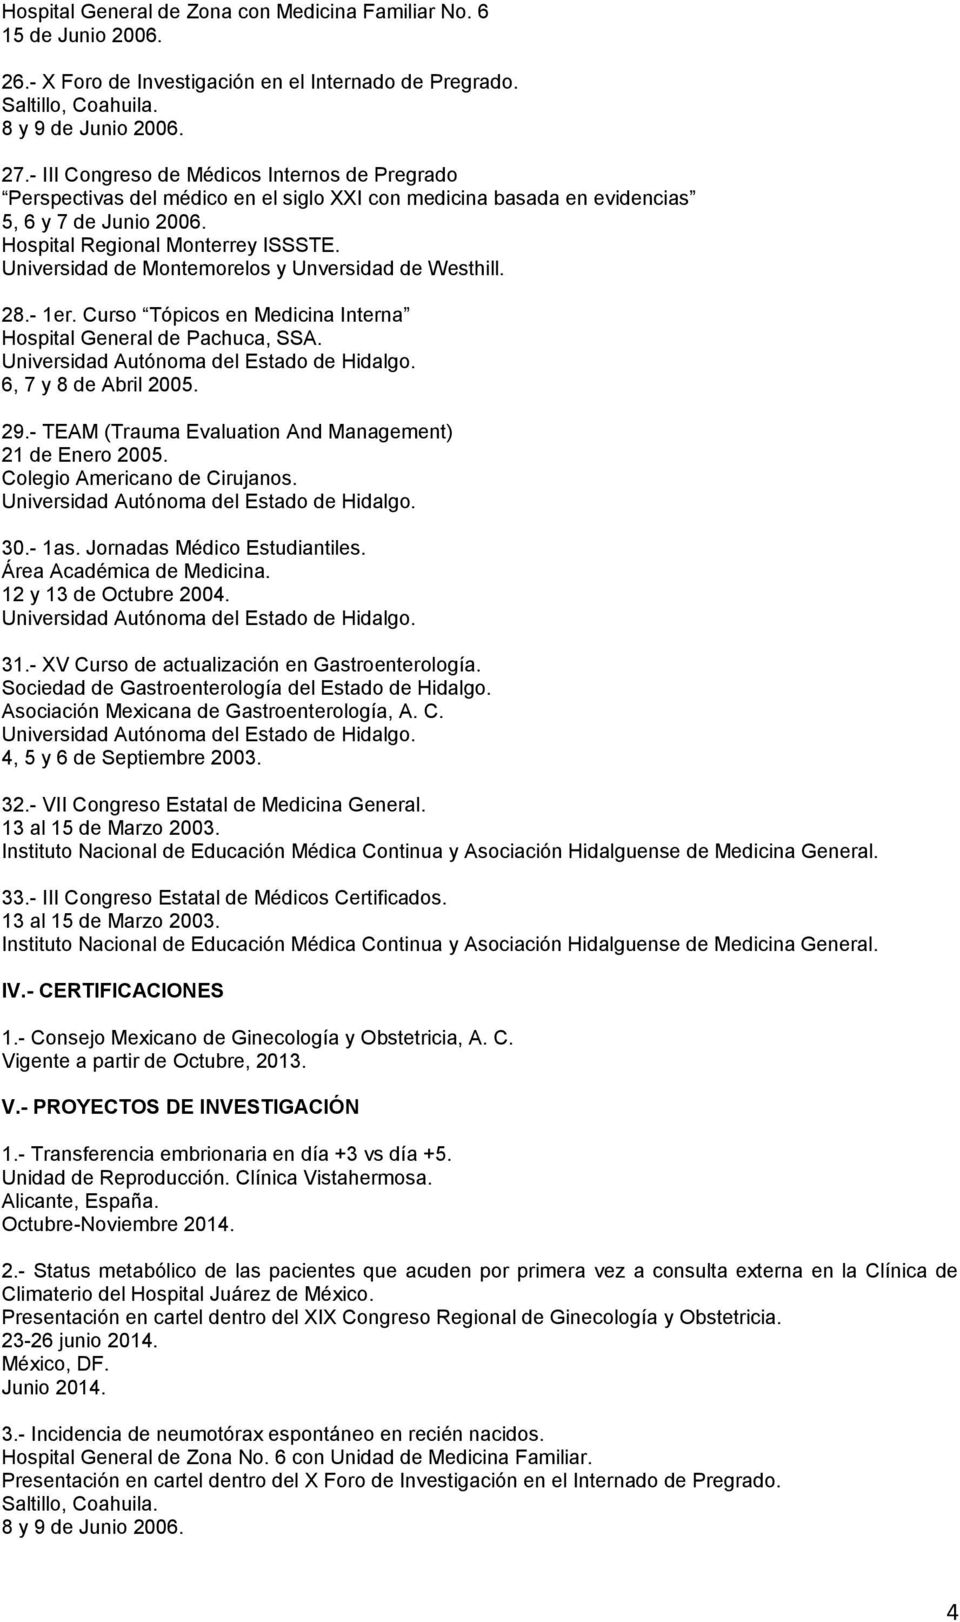 Universidad de Montemorelos y Unversidad de Westhill. 28.- 1er. Curso Tópicos en Medicina Interna Hospital General de Pachuca, SSA. 6, 7 y 8 de Abril 2005. 29.